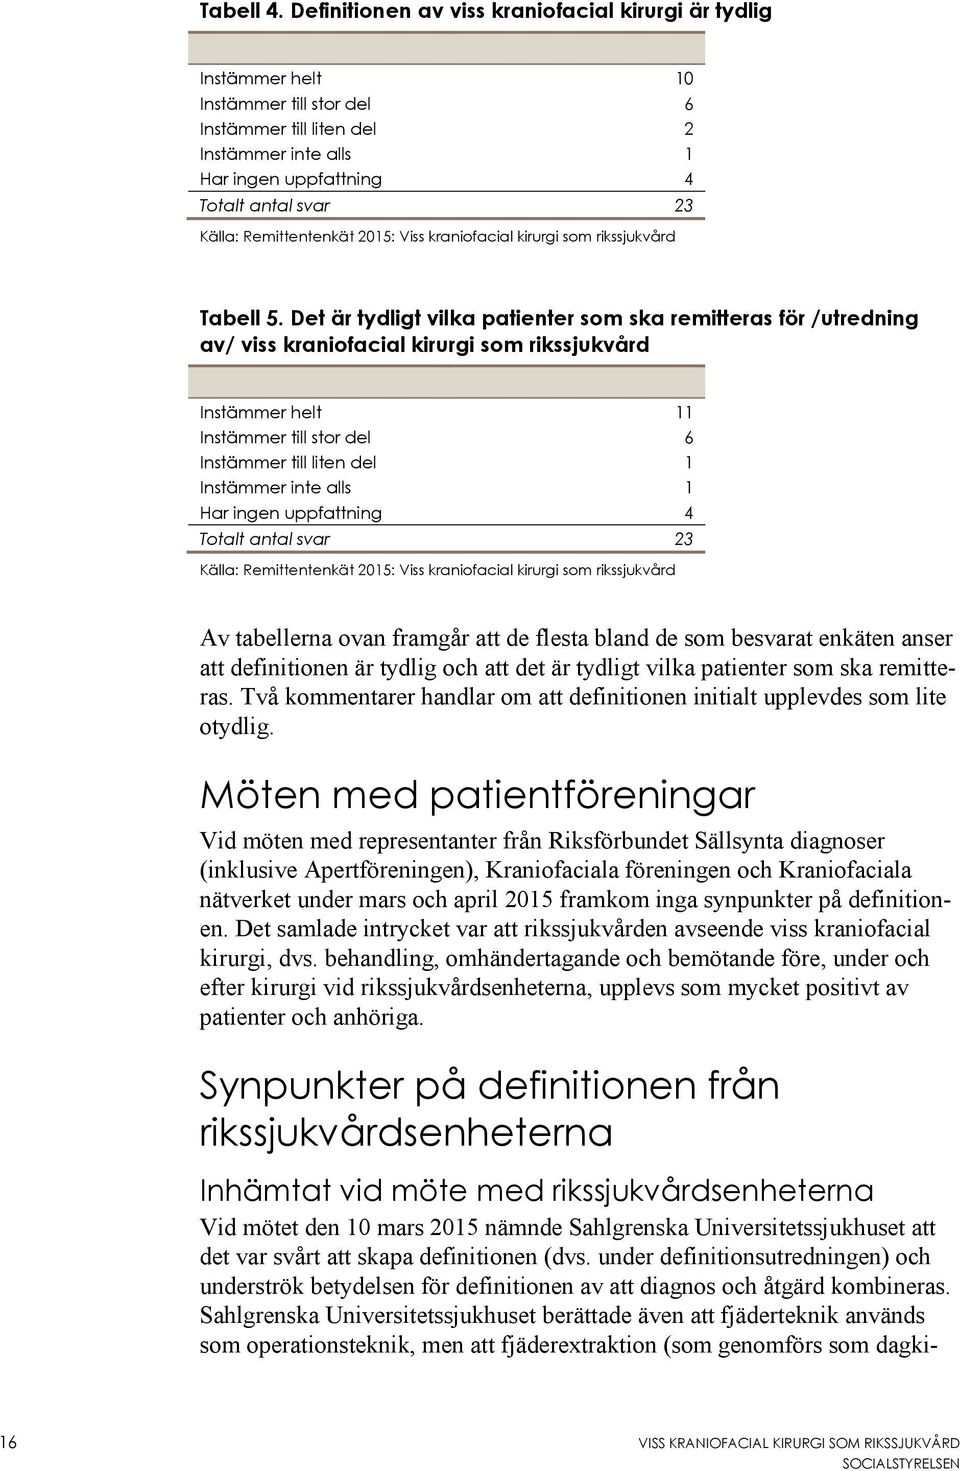 Remittentenkät 2015: Viss kraniofacial kirurgi som rikssjukvård Tabell 5.